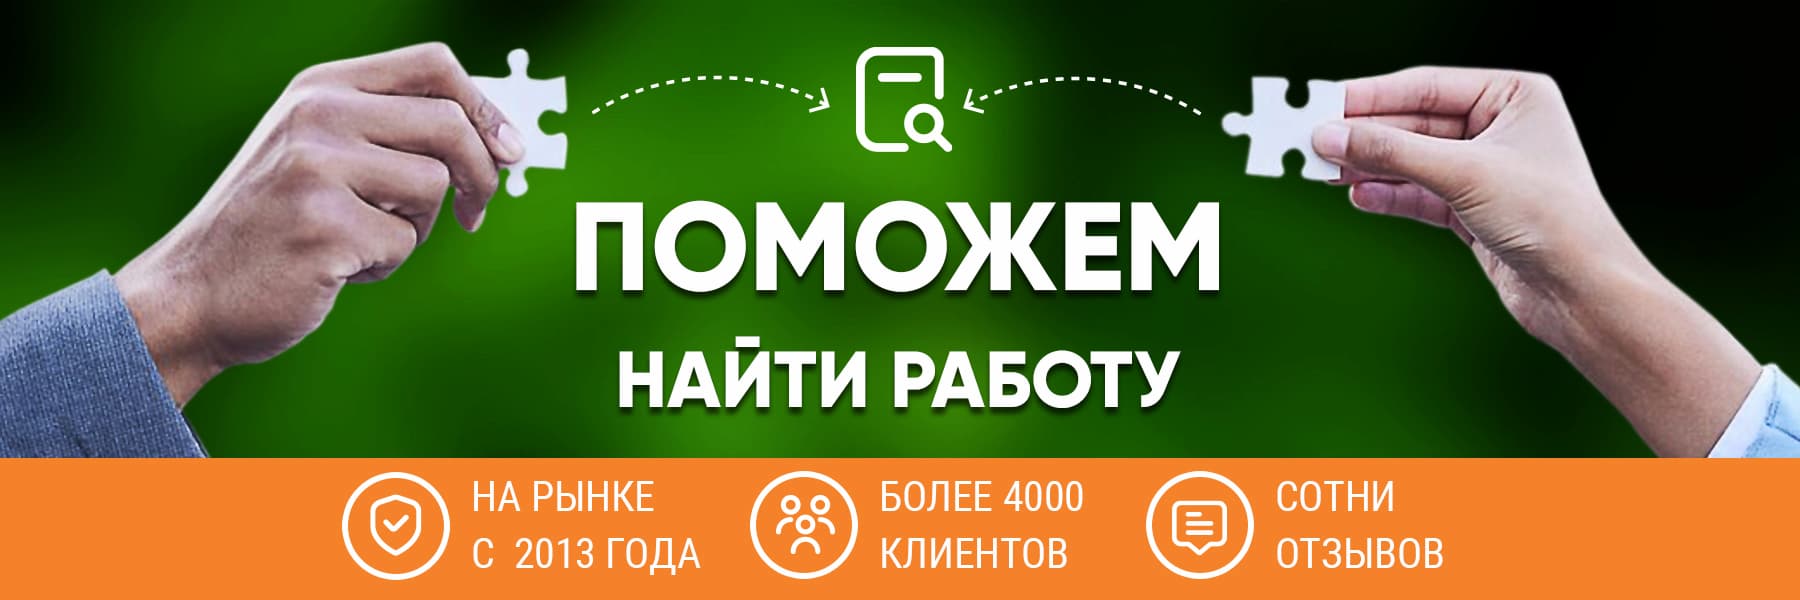 Сайты поиска работы и Работа в Москве по отраслям